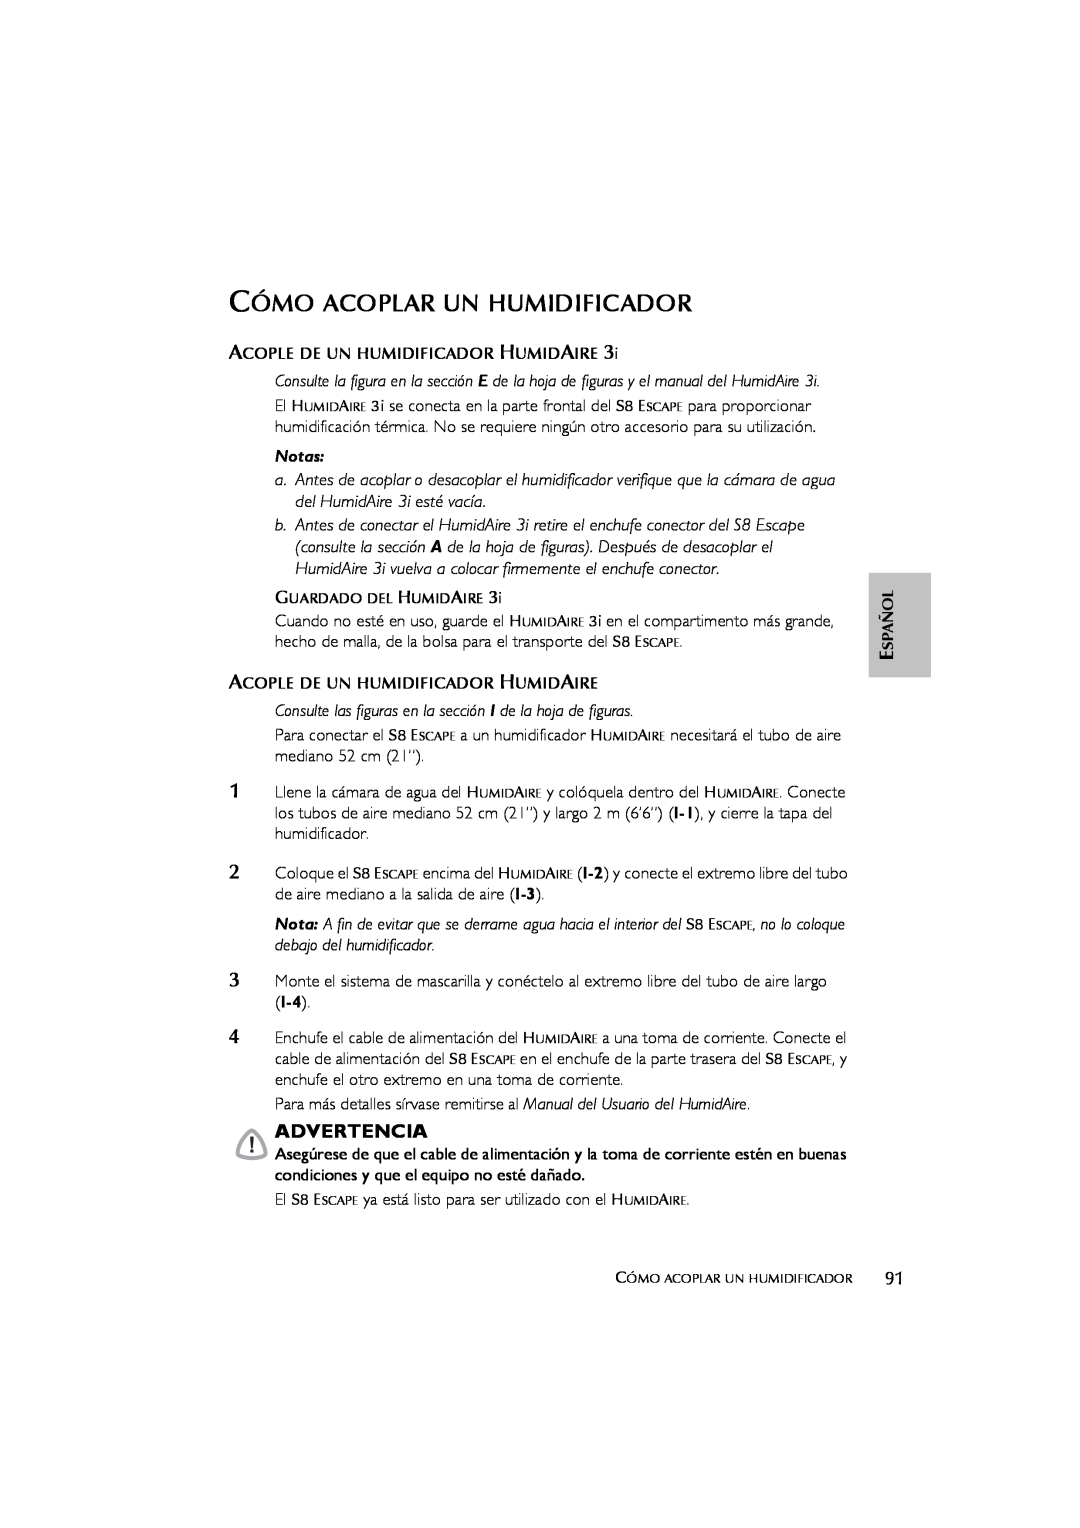 ResMed s8 user manual Cómo Acoplar Un Humidificador, Notas, Advertencia 